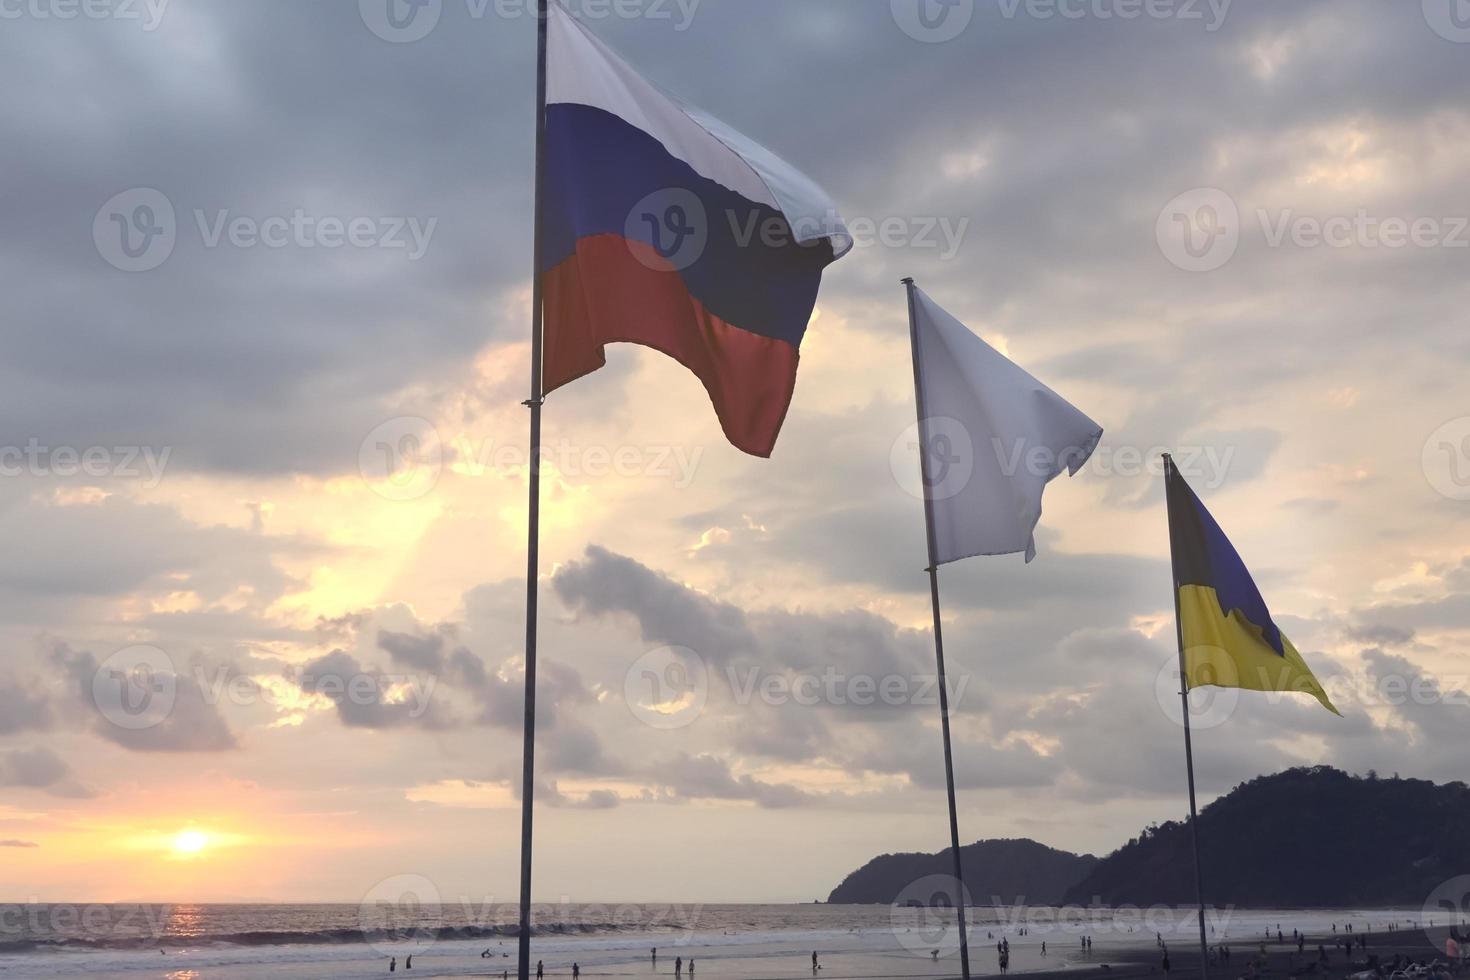 bandeiras ucranianas e russas no fundo do céu ao pôr do sol na praia. foto